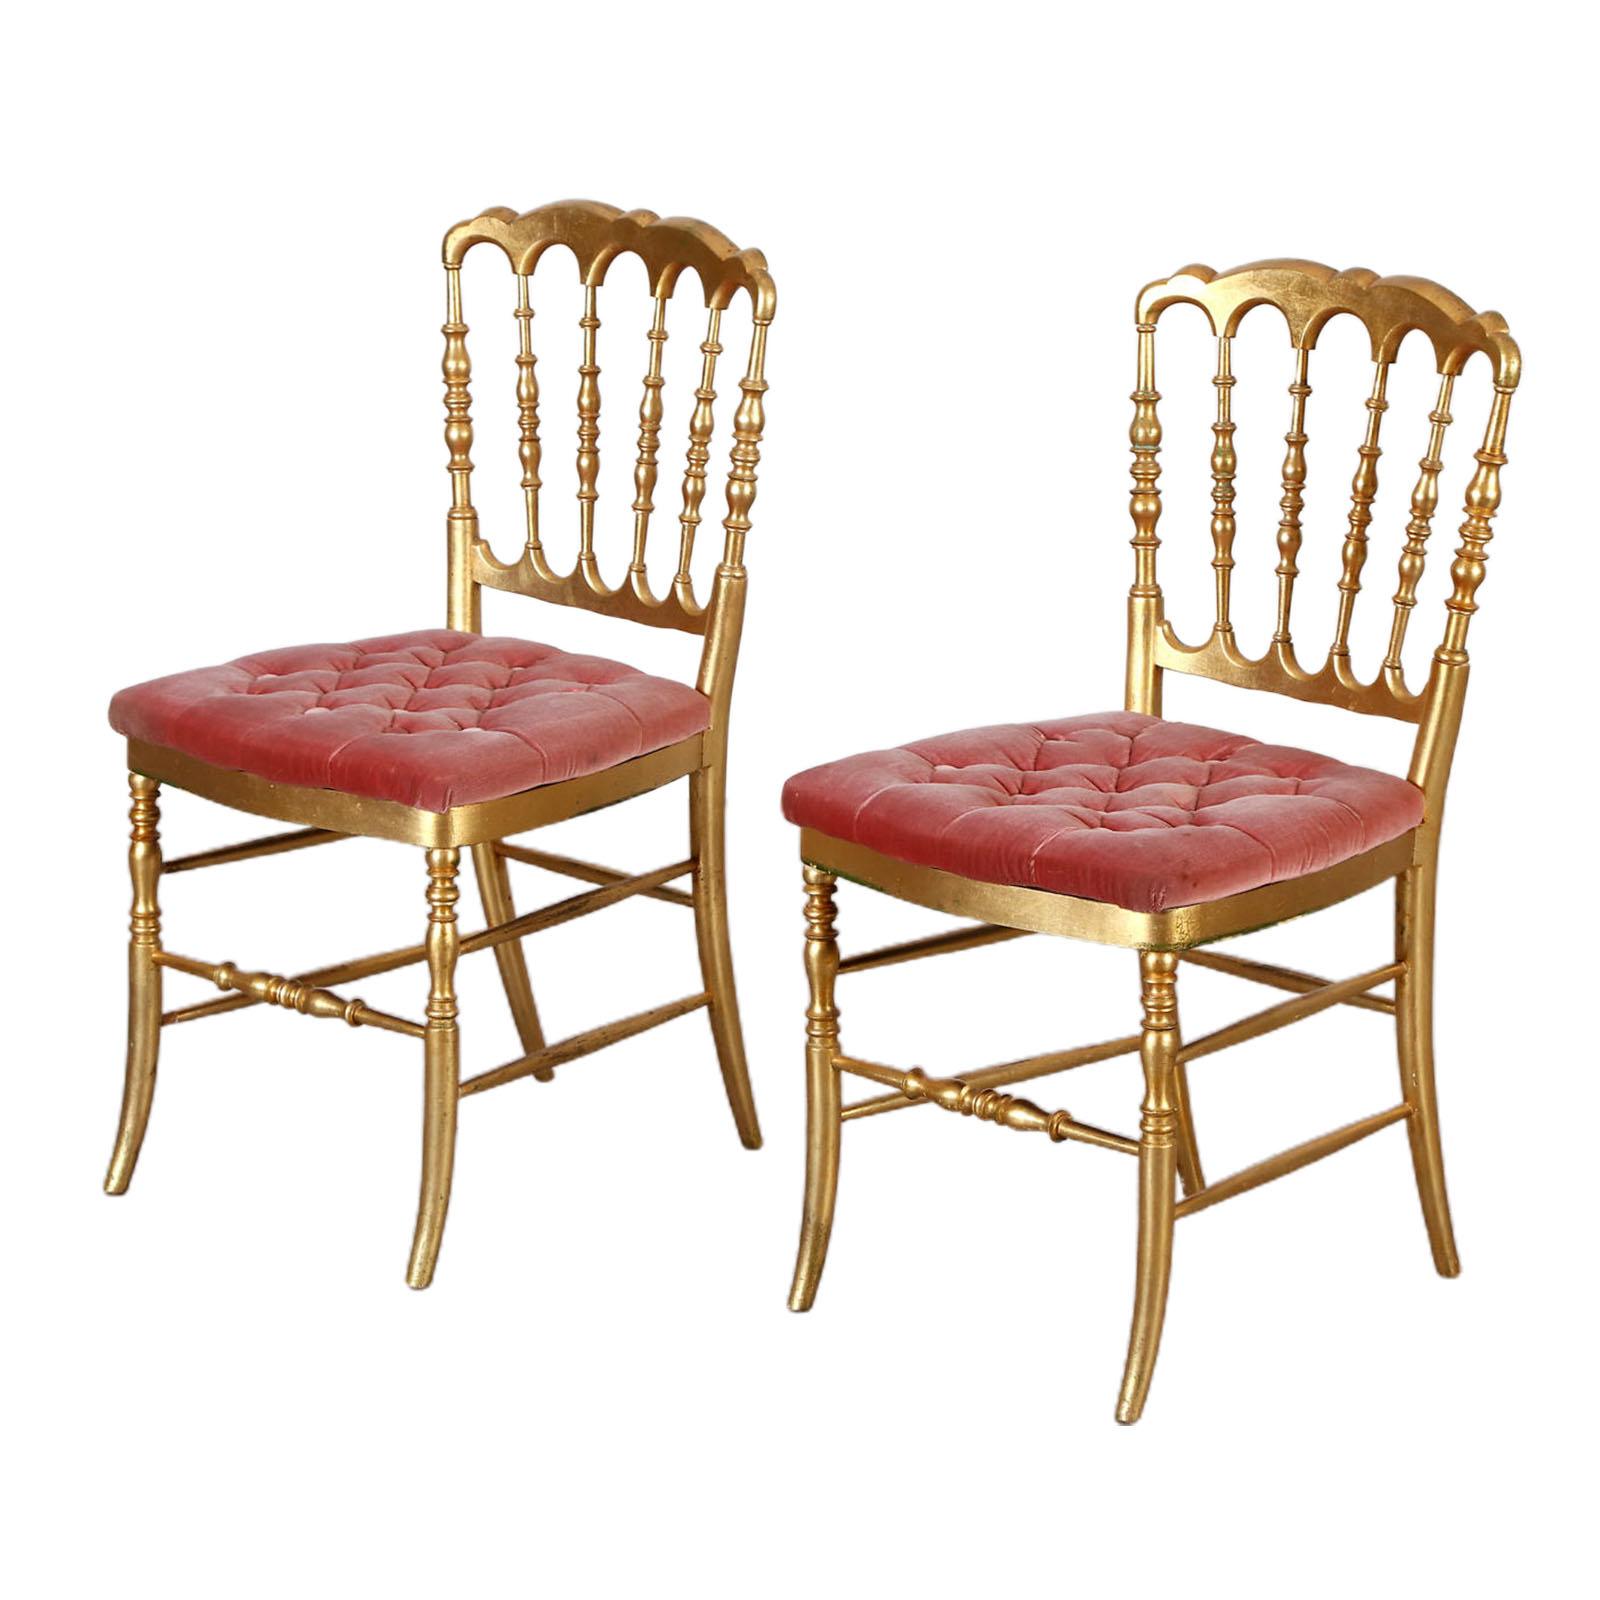 Jolie paire de chaises Chiavari en bois doré du 19ème siècle